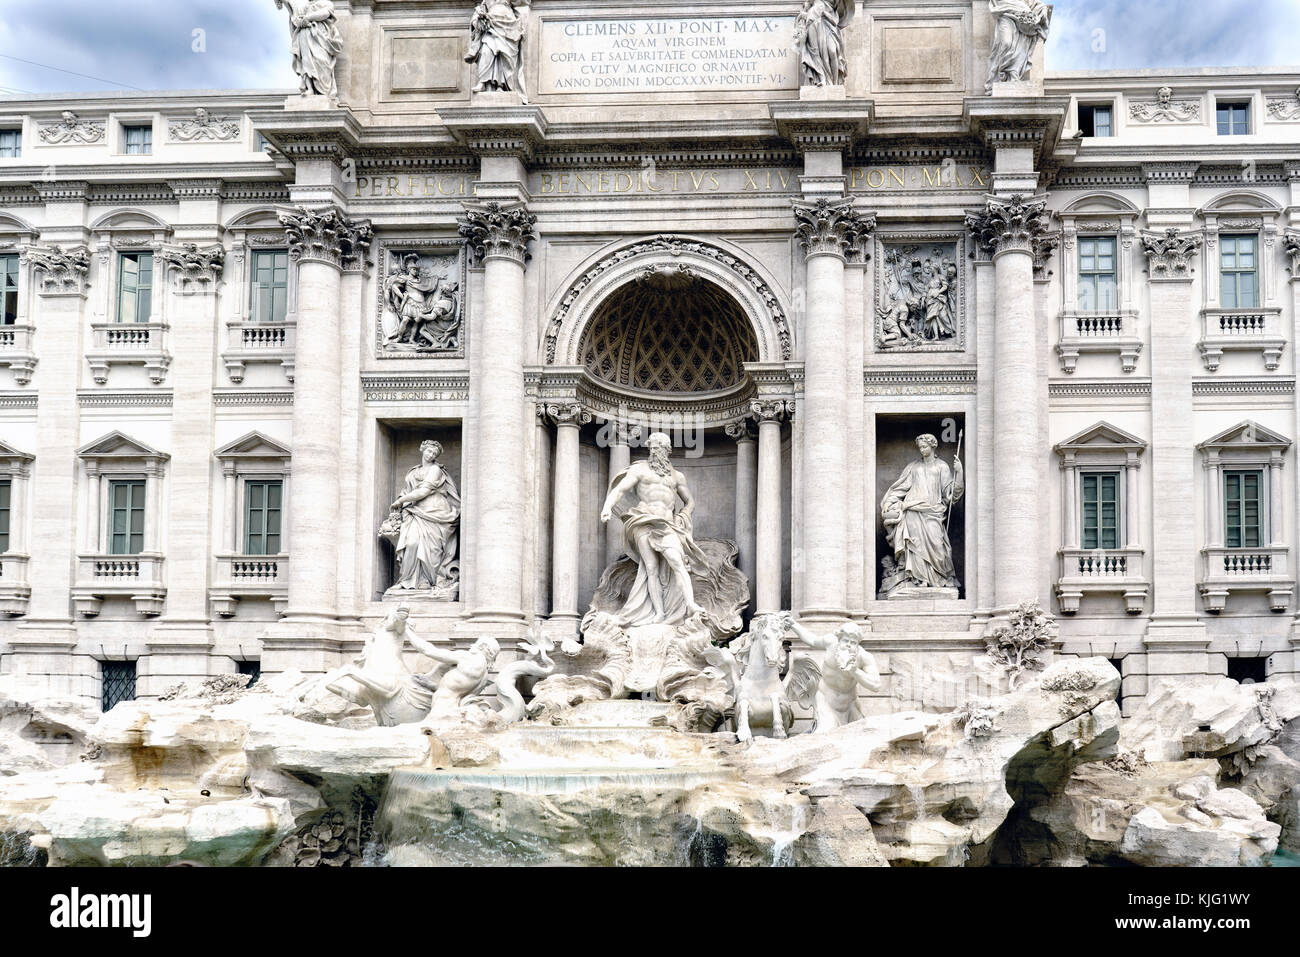 Vue panoramique sur la fontaine dite "Fontana di Trevi", un des endroits les plus visités de Rome et avec la place de trevi toujours plein de touristes. Banque D'Images